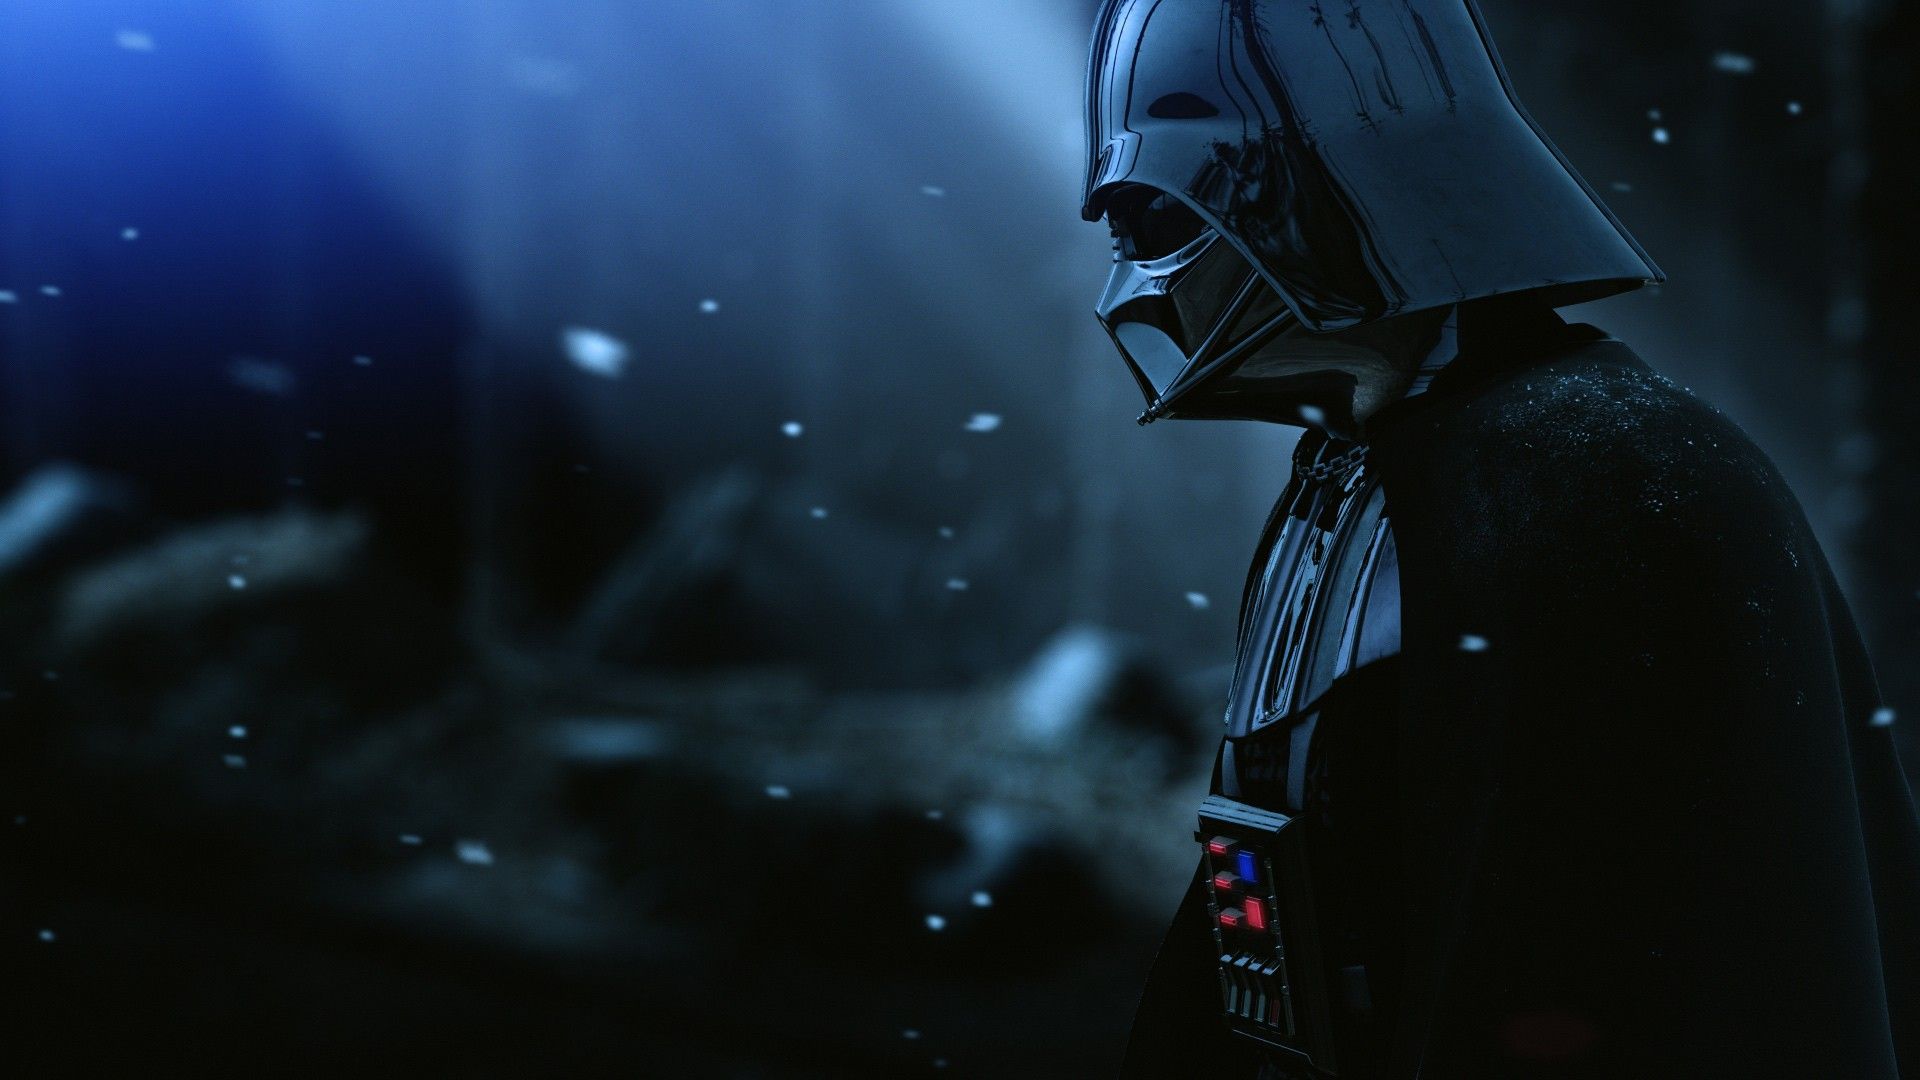 Star Wars Darth Vader HD Wallpaper FullHDwpp Full